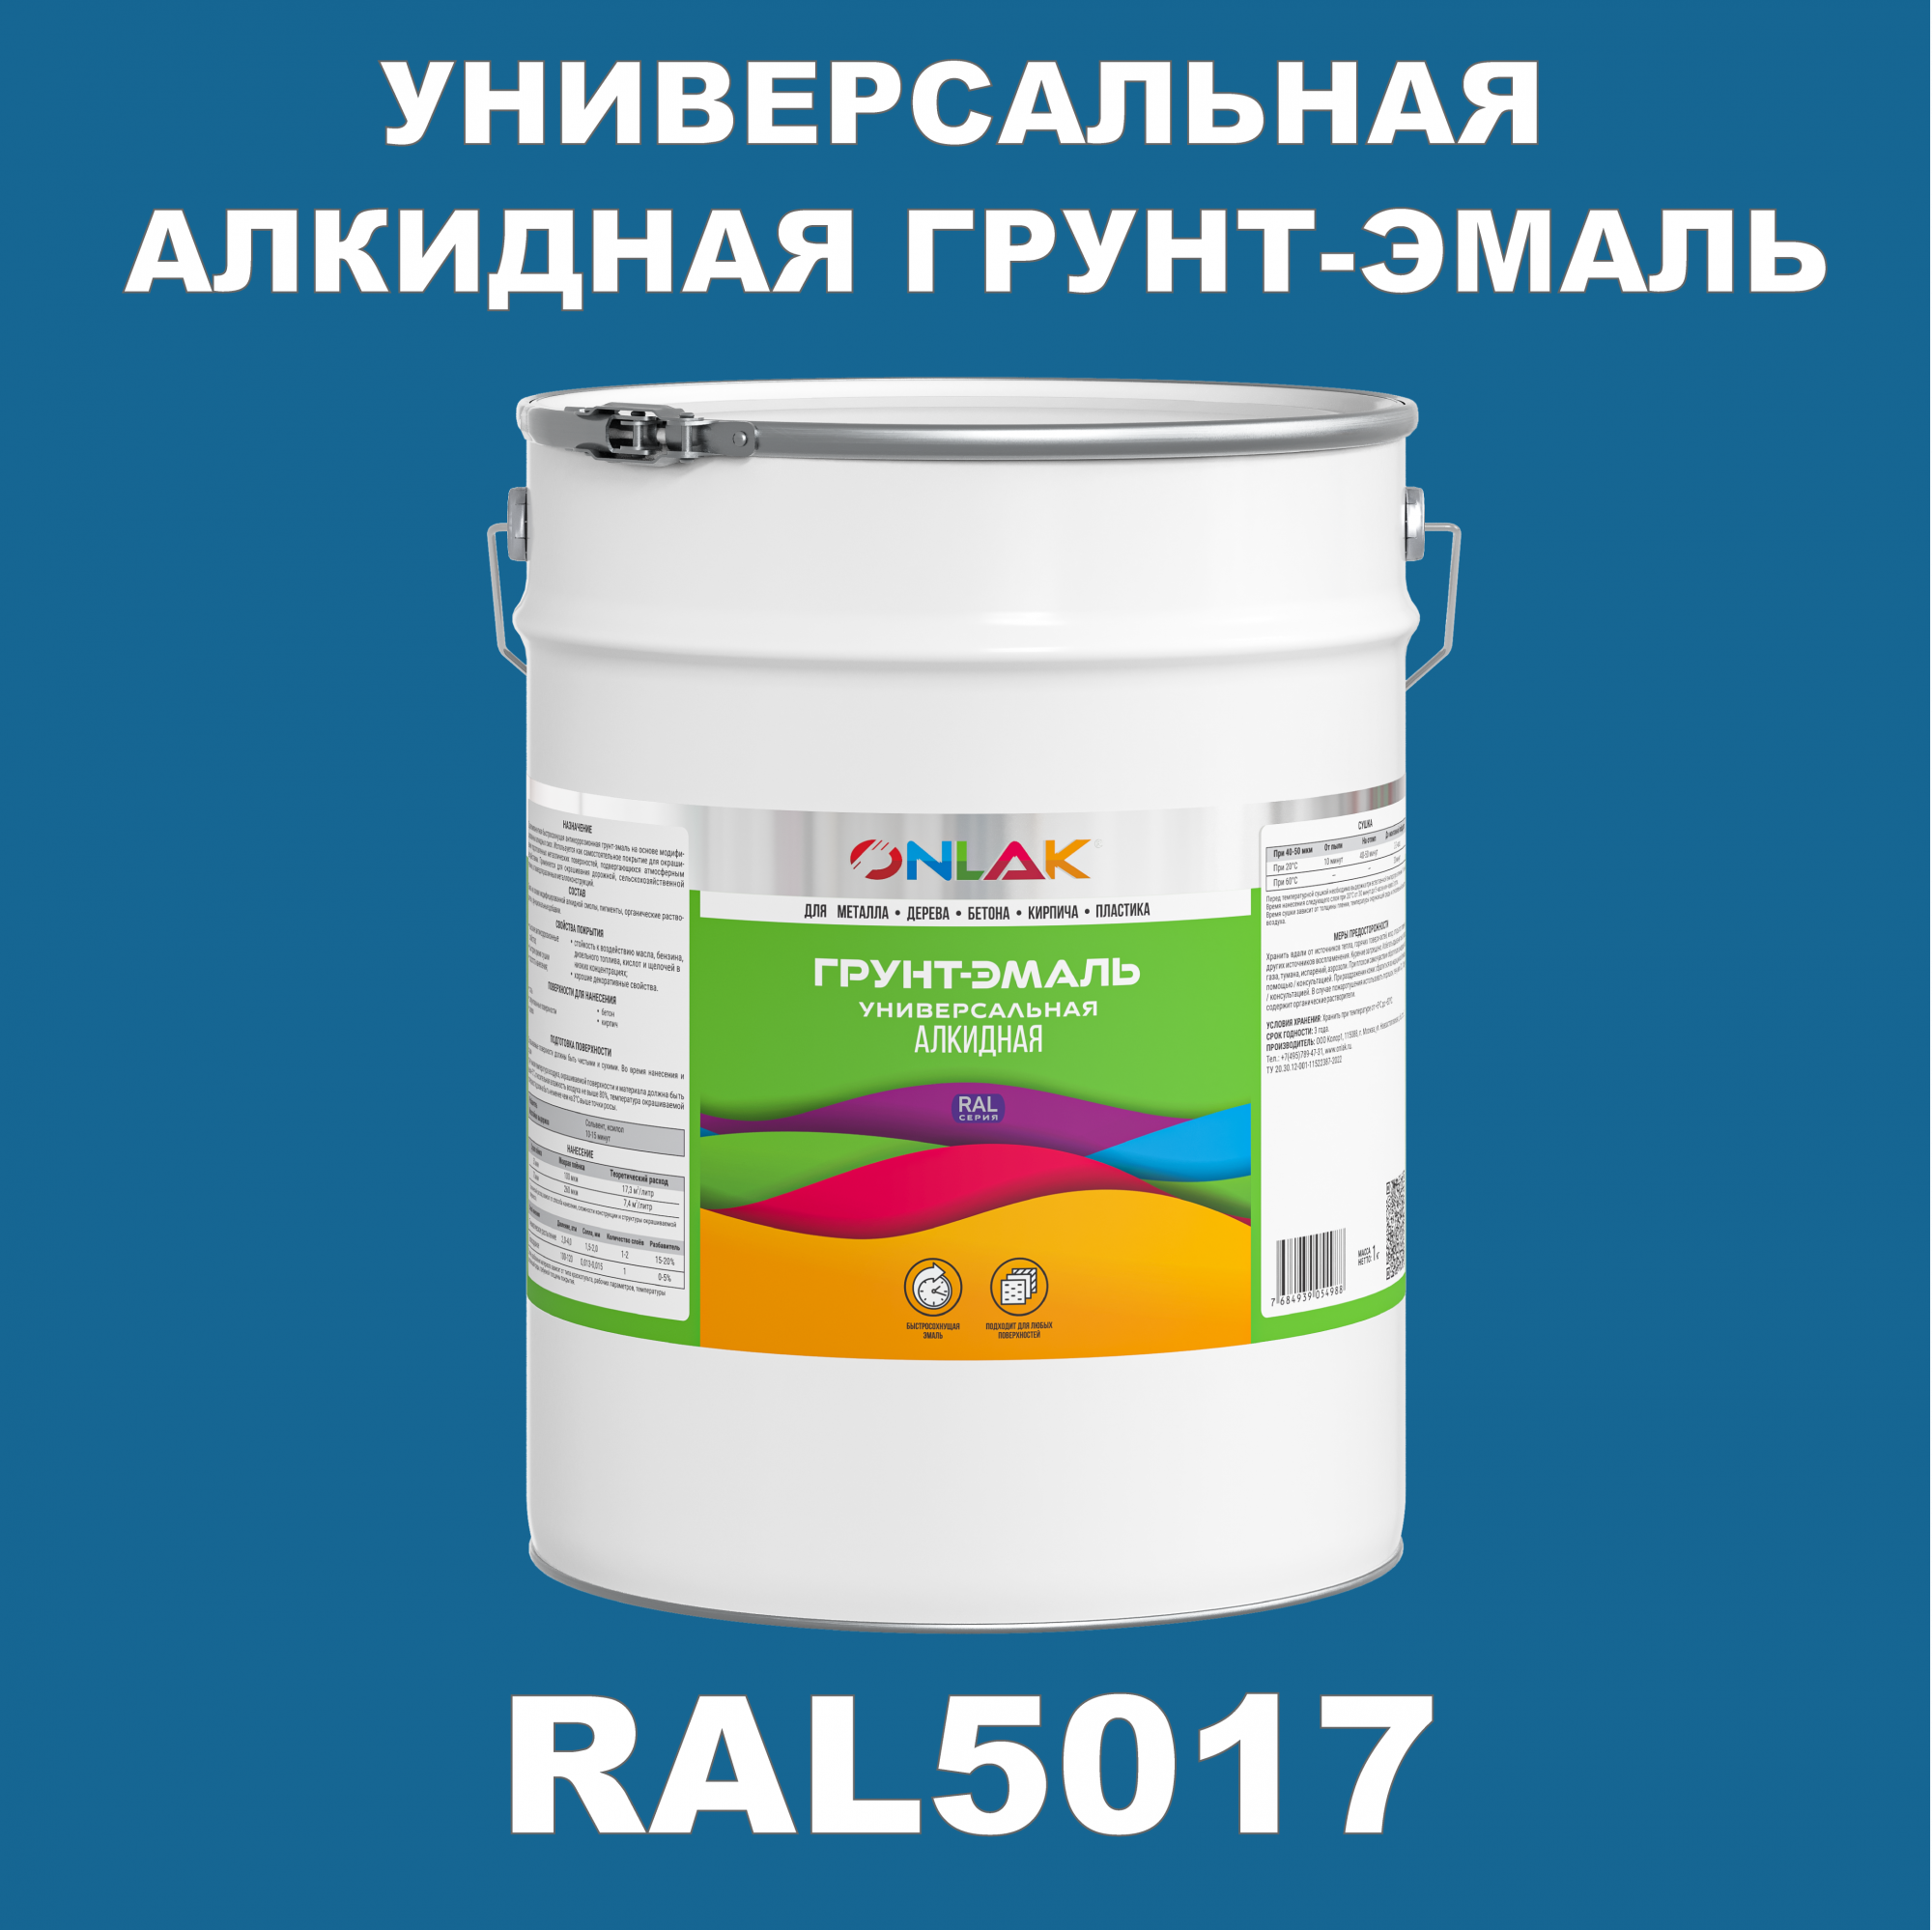 Грунт-эмаль ONLAK 1К RAL5017 антикоррозионная алкидная по металлу по ржавчине 20 кг грунт эмаль yollo по ржавчине алкидная серая 0 9 кг